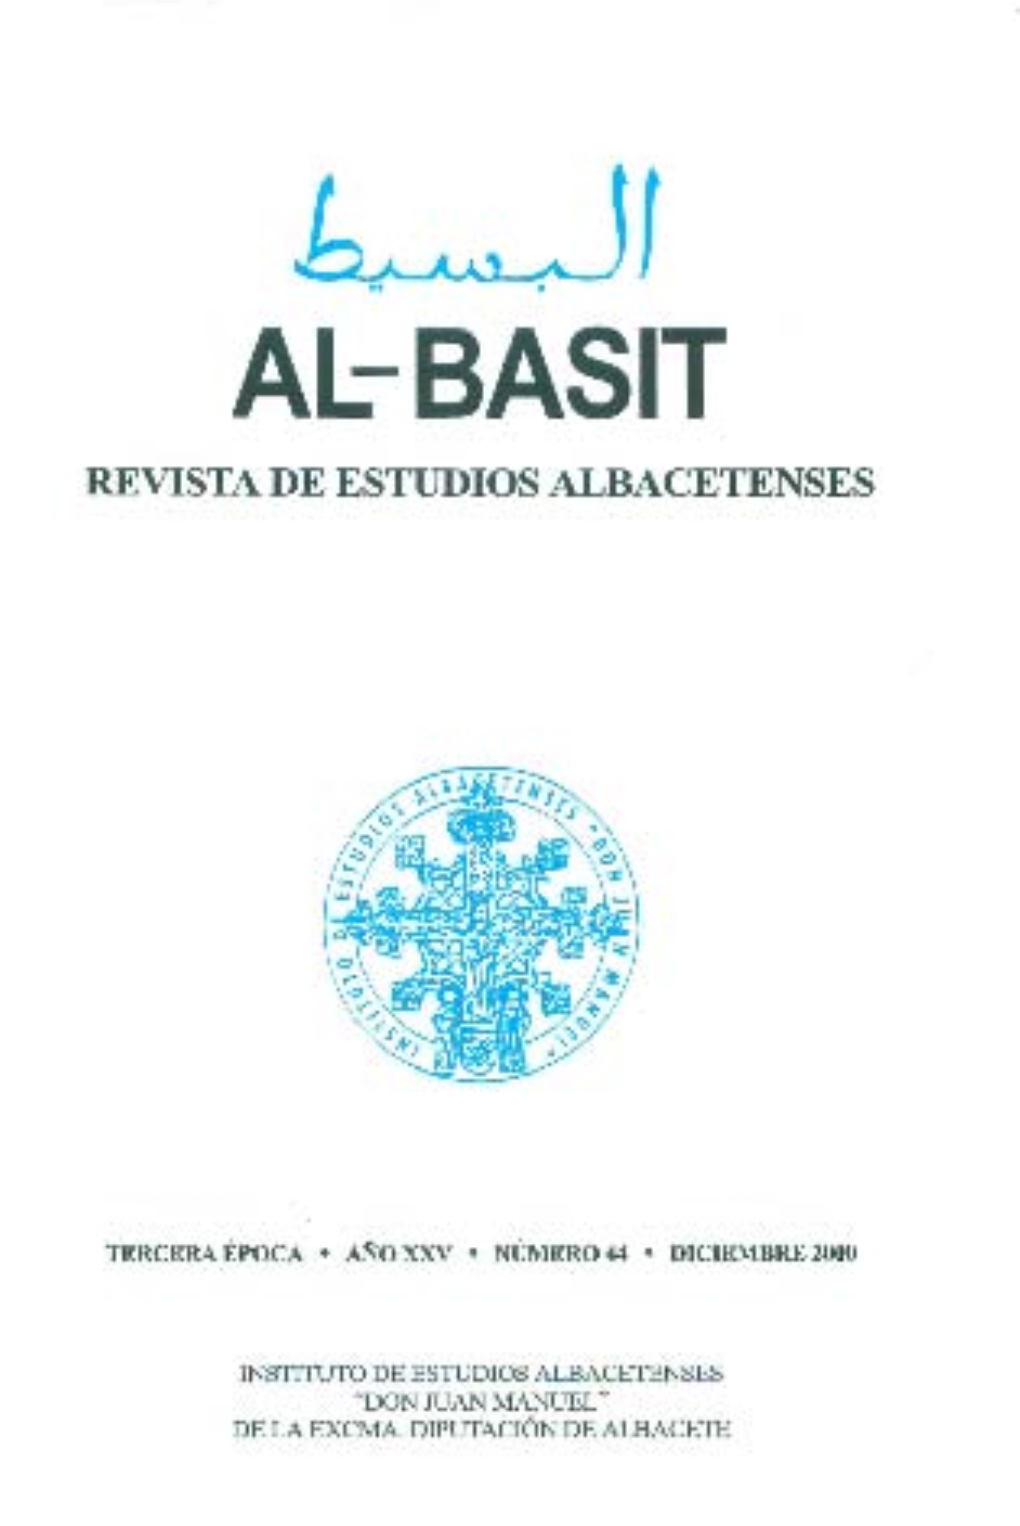 Al-Basit Revista De Estudios Albacetenses